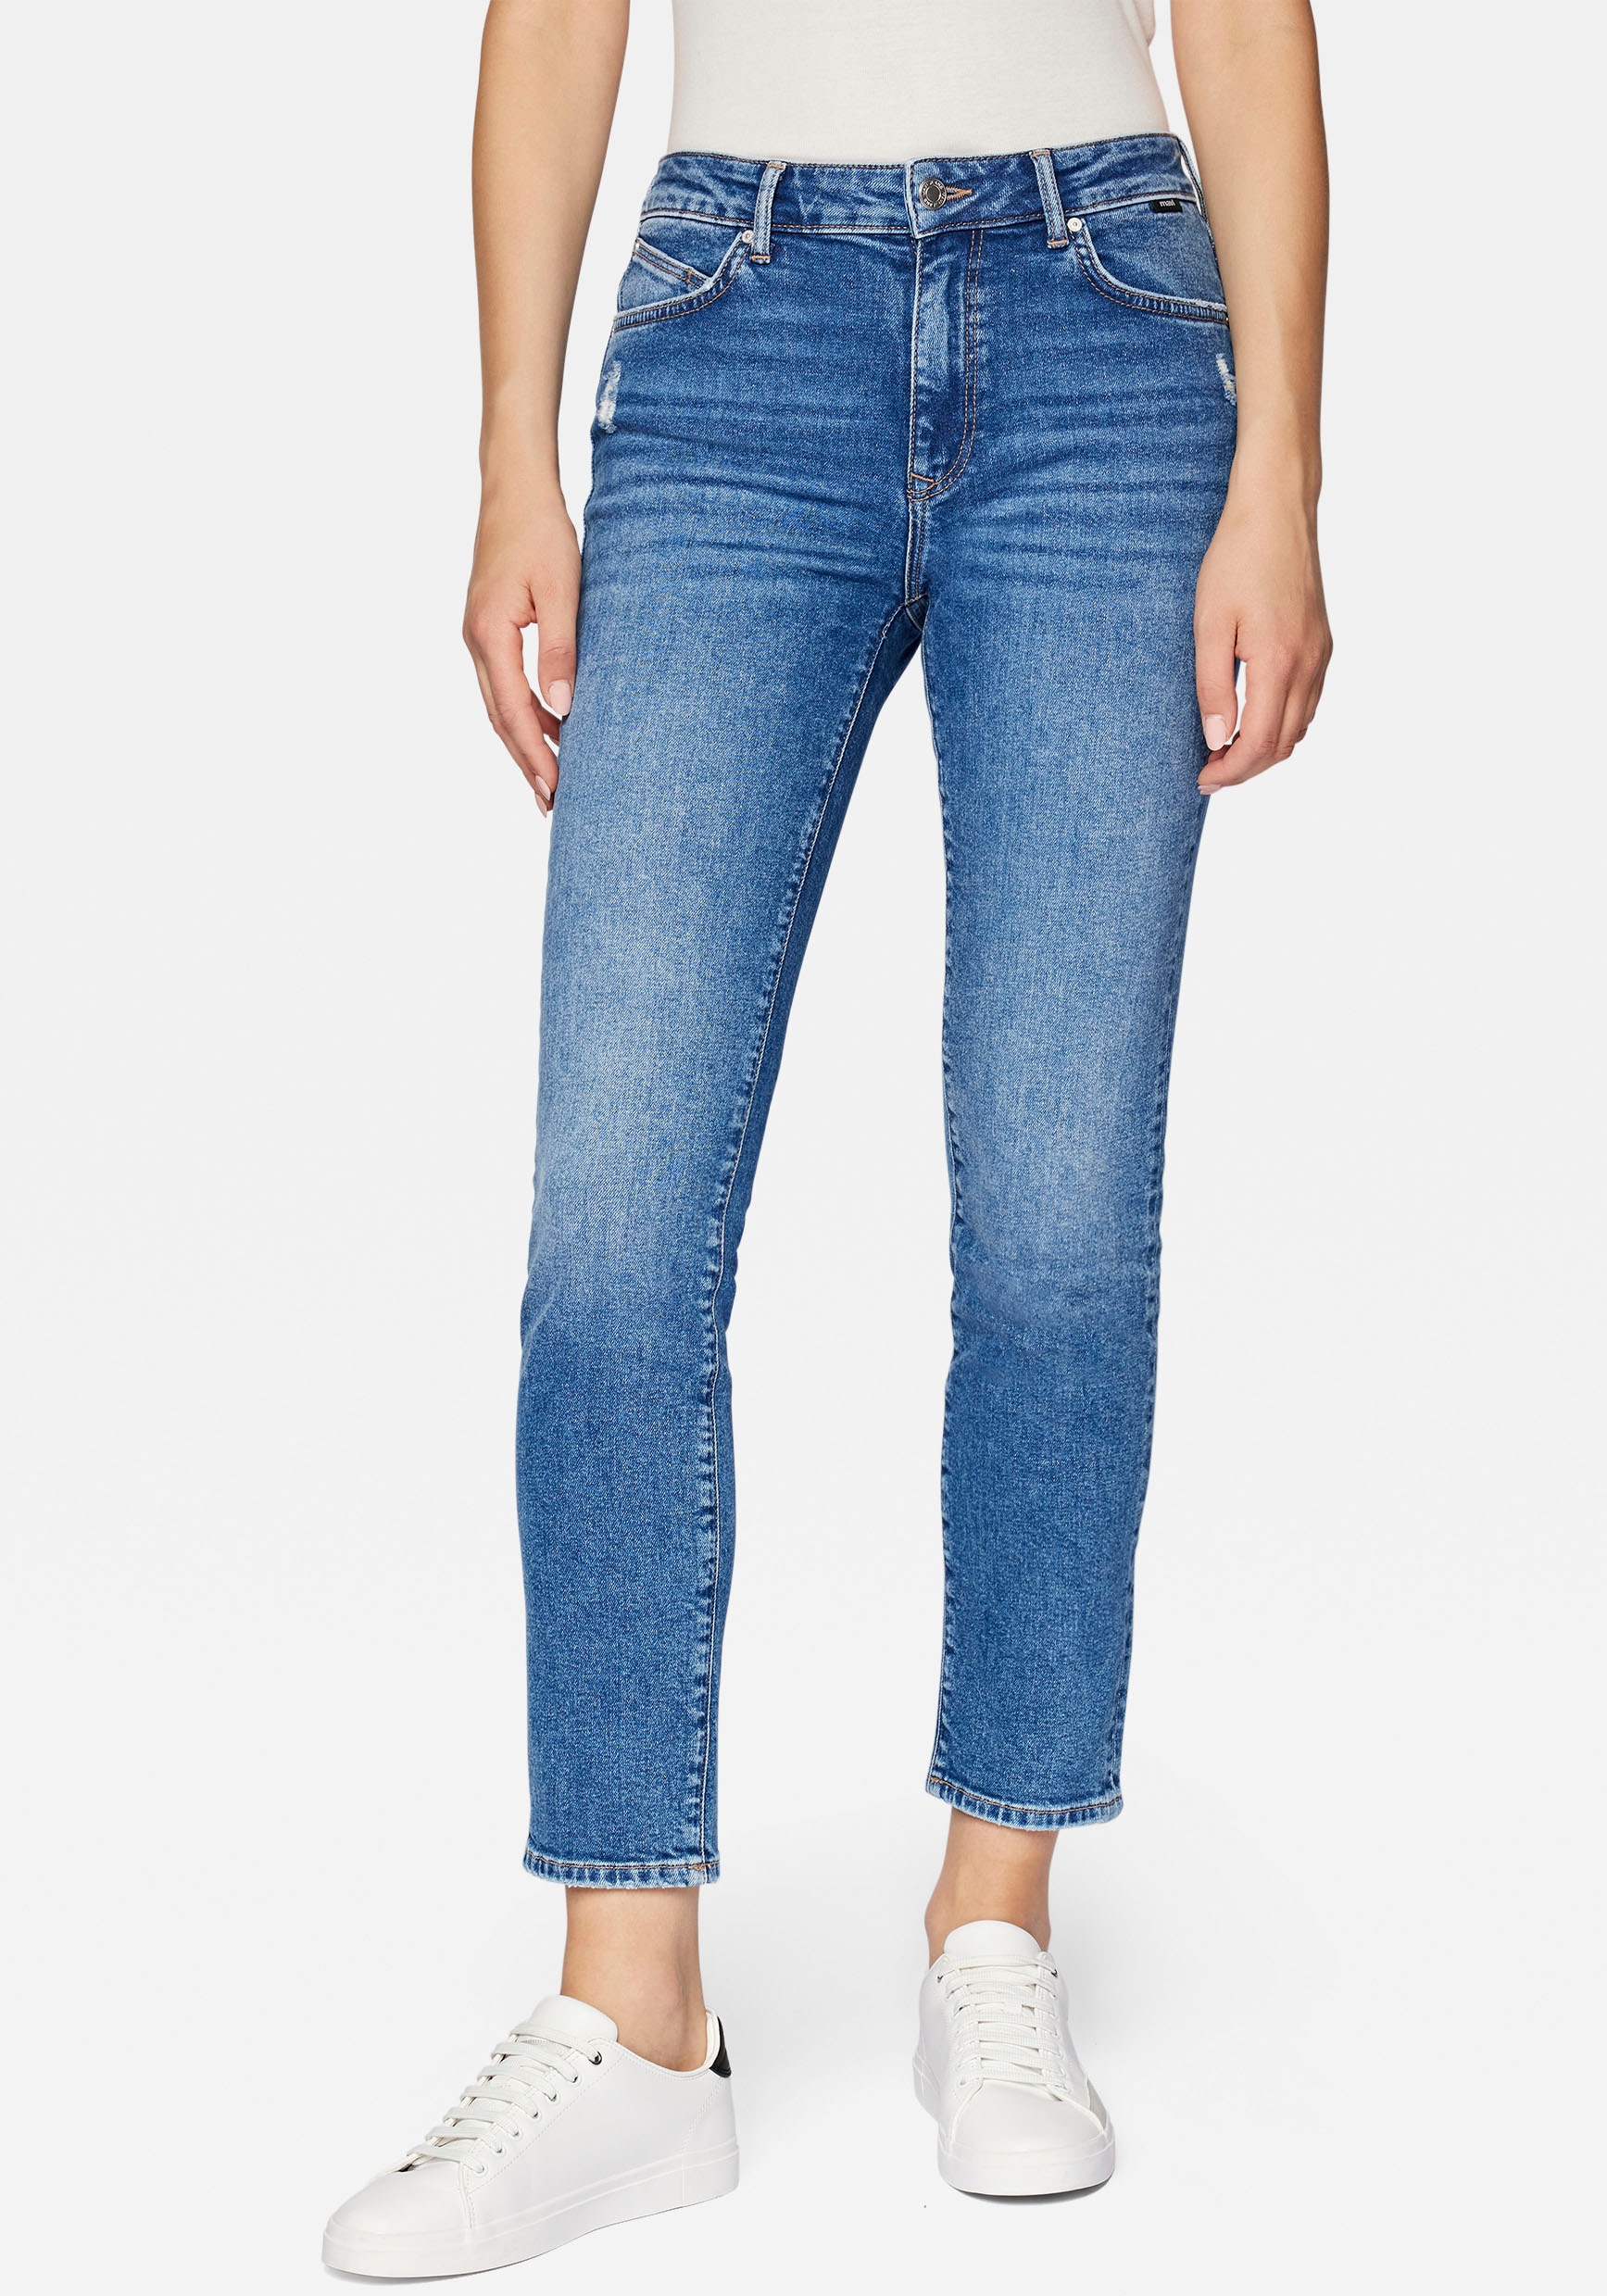 Mavi Slim-fit-Jeans, trageangenehmer Stretchdenim dank hochwertiger Verarbeitung von mavi